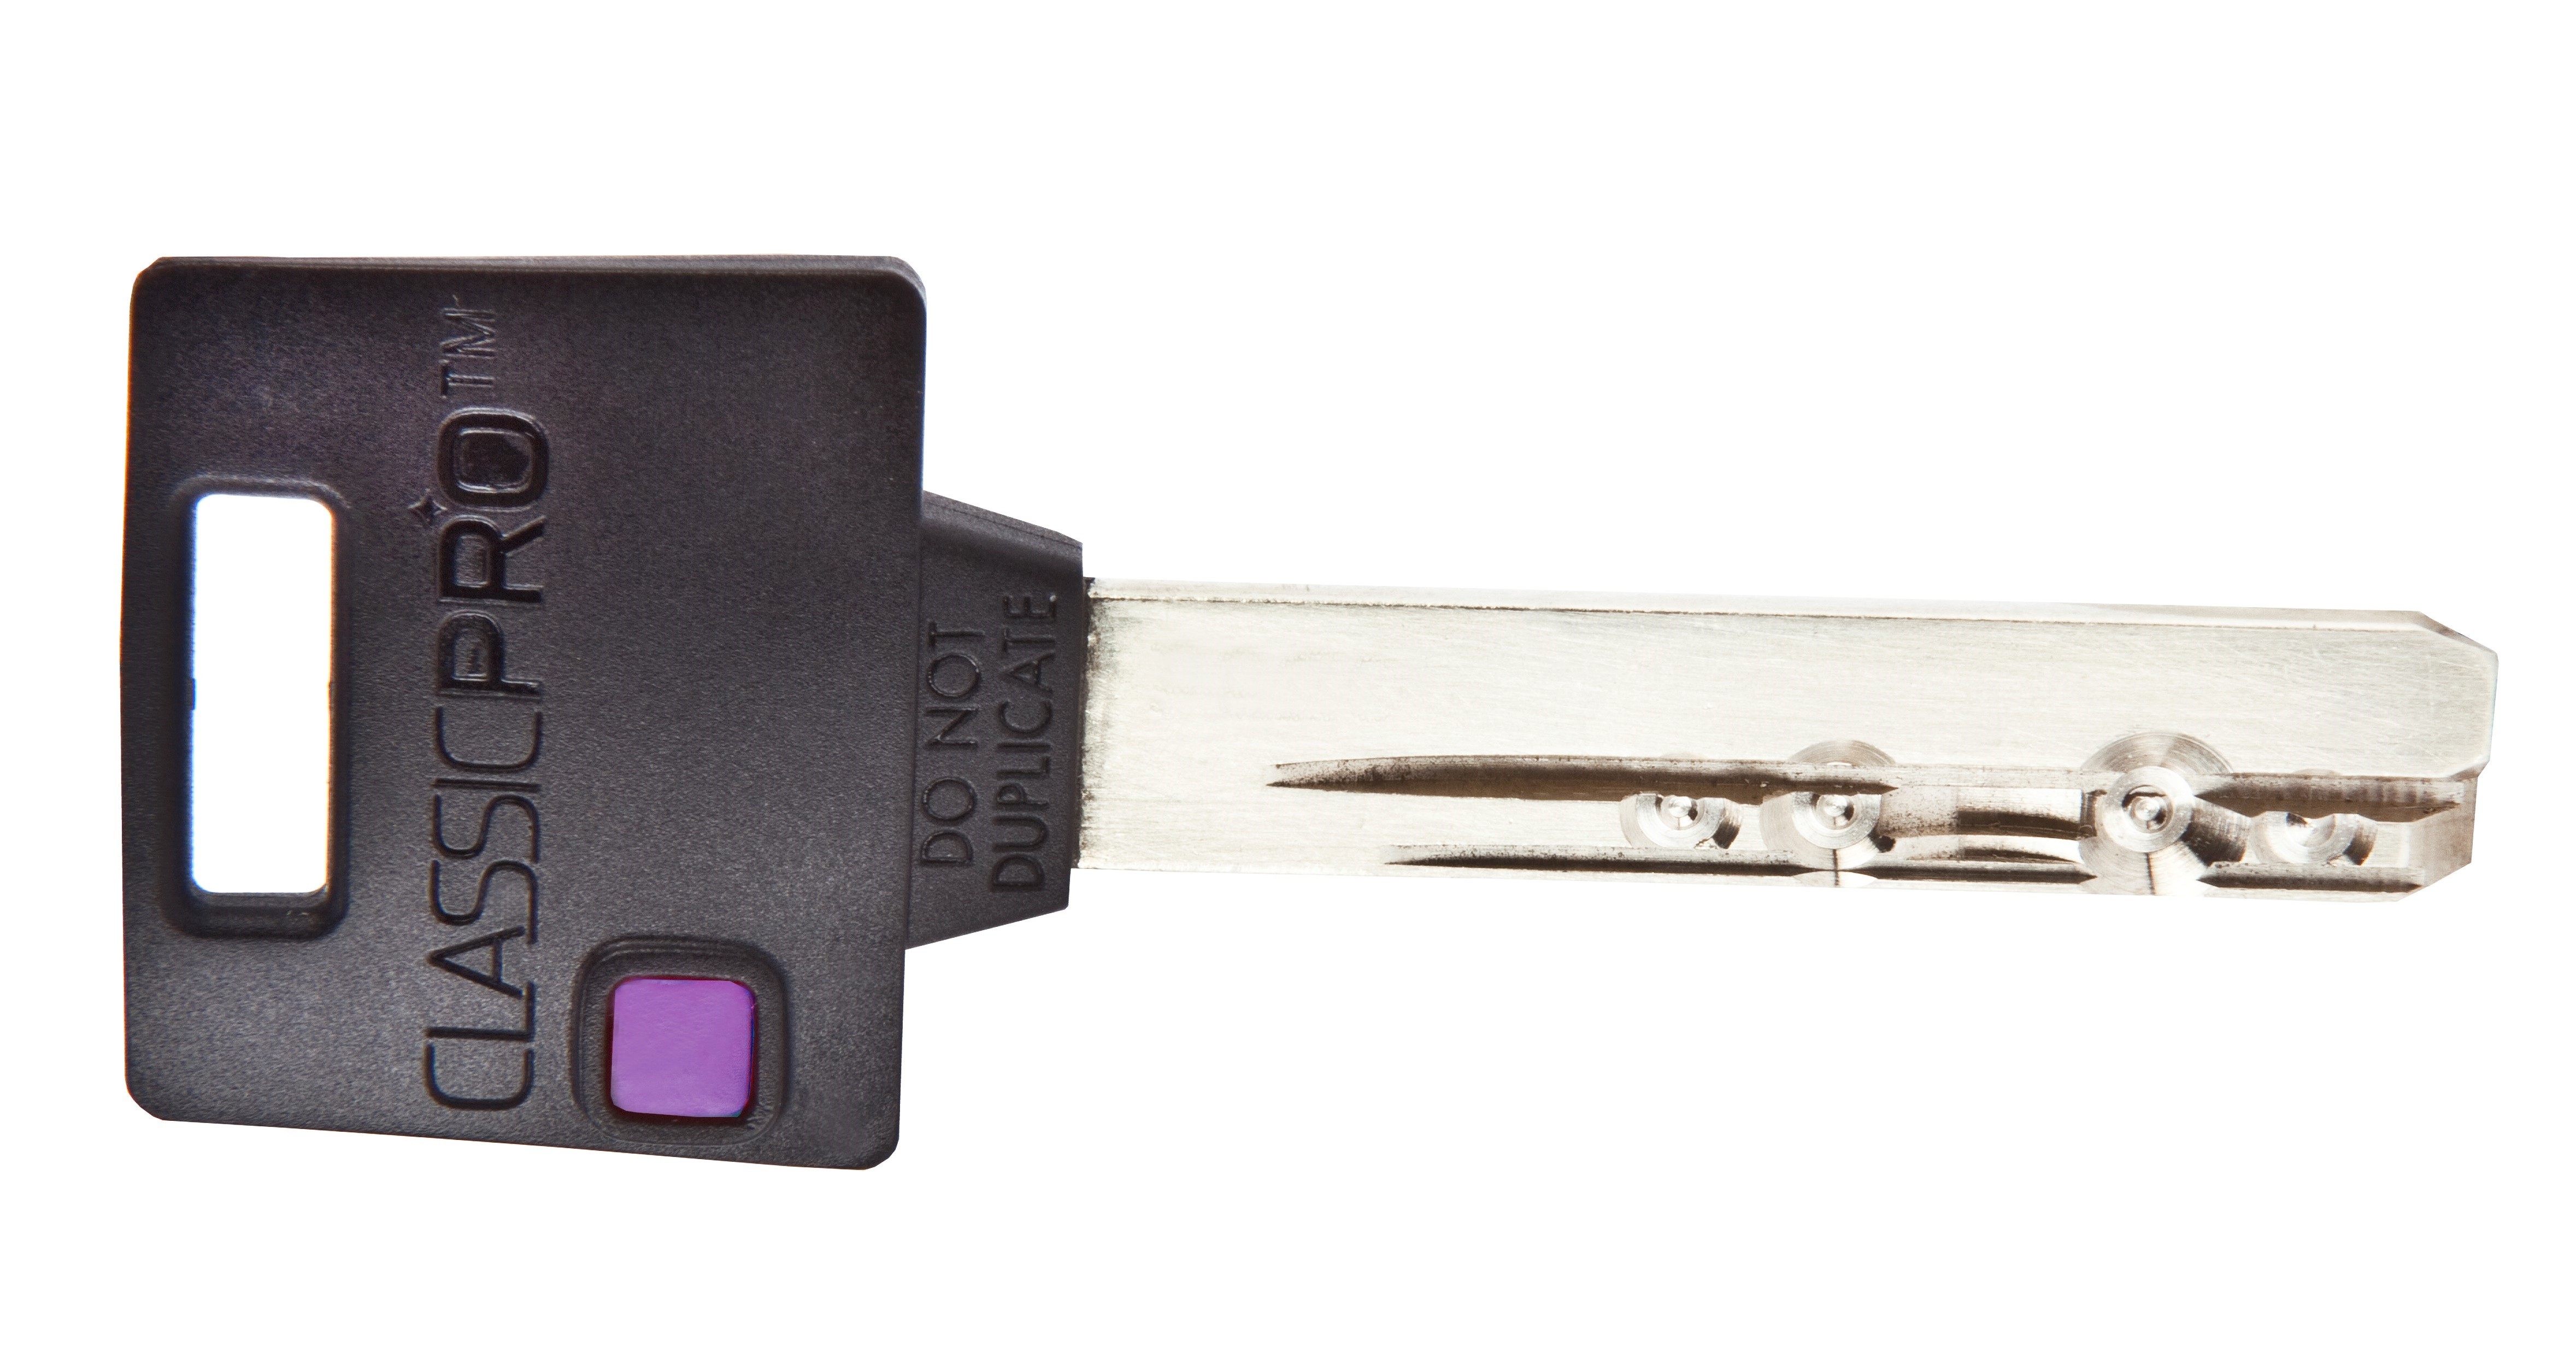 Klíč Mul-T-Lock MTL 400 Classic PRO